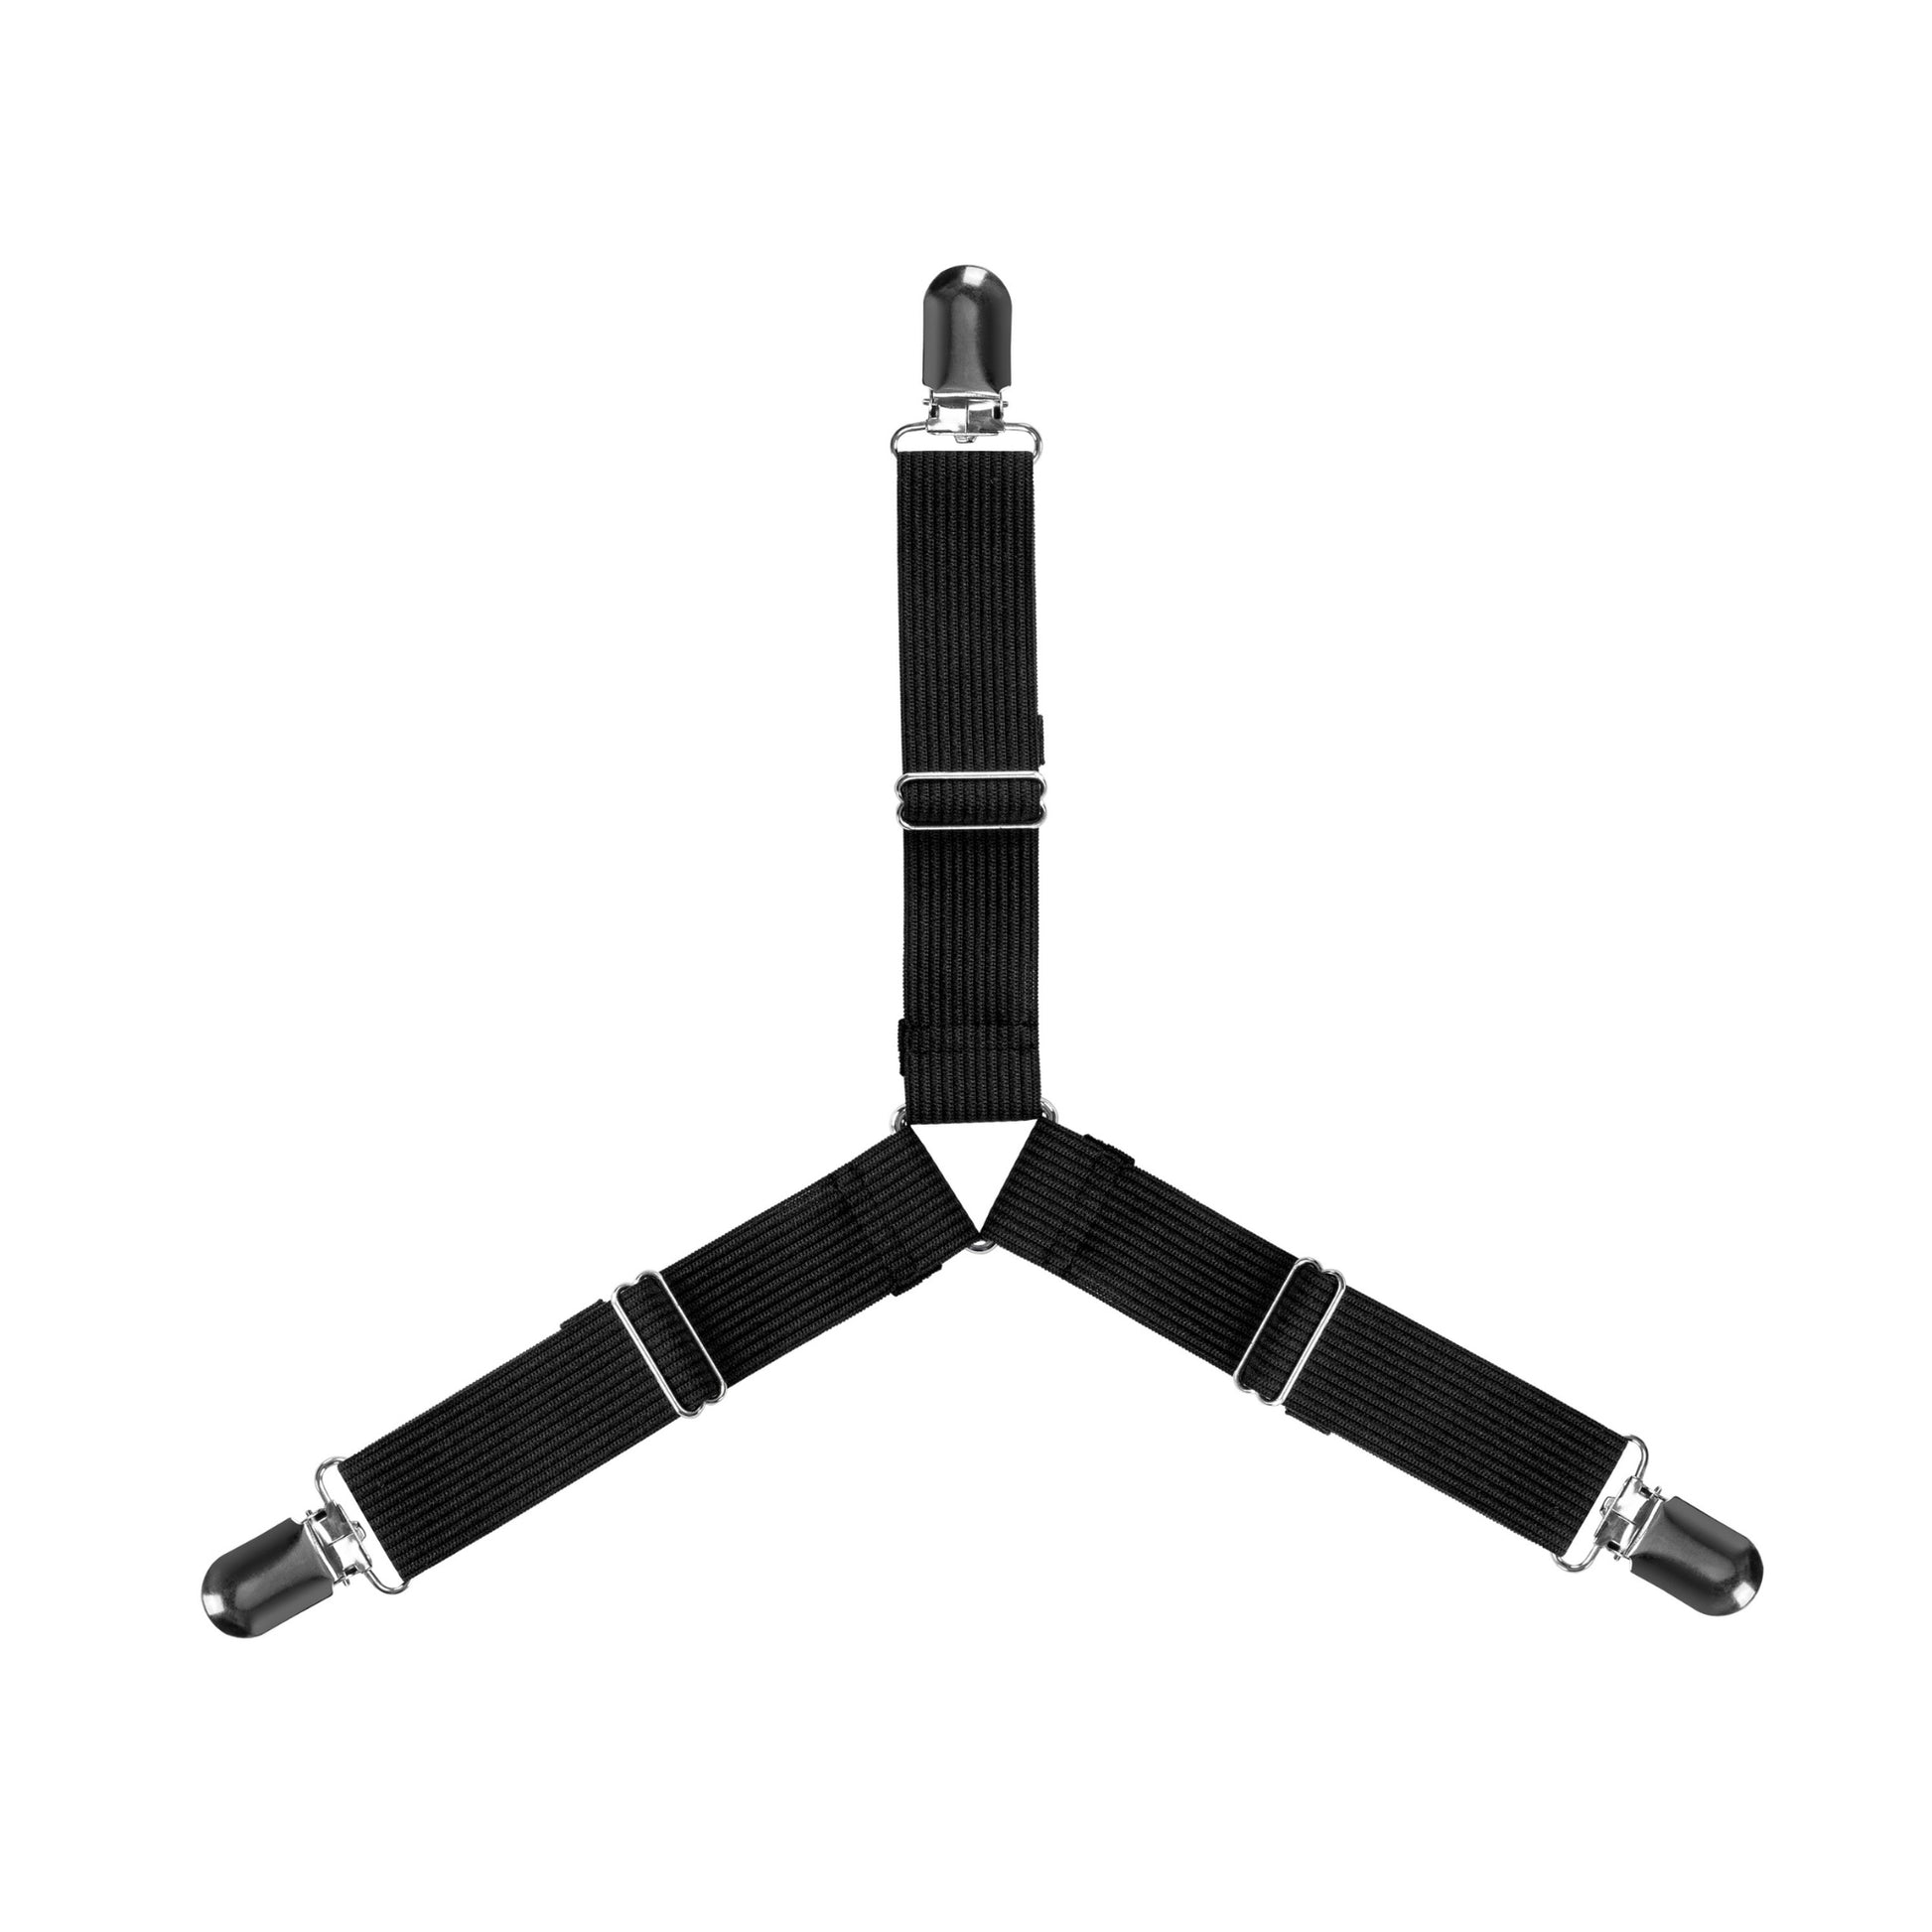 2pcs Adjustable Bed Fitted Sheet Straps Suspenders Gripper Holder